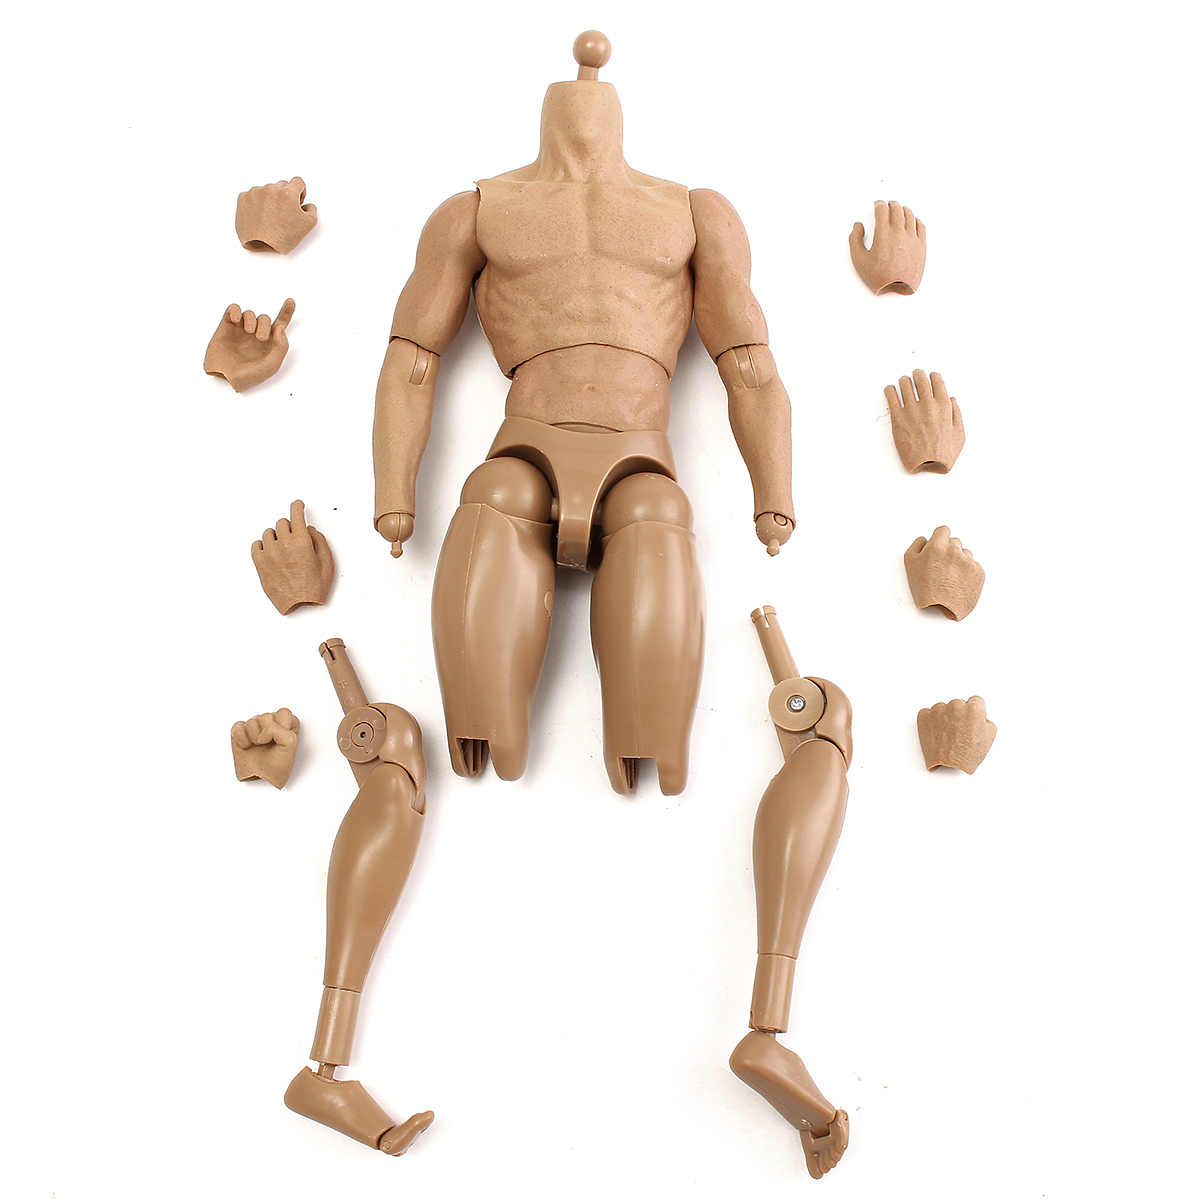 ZC Toys 1/6 Scale muscular male nude figure corps Ver 3.0 TTM19 USA Vendeur